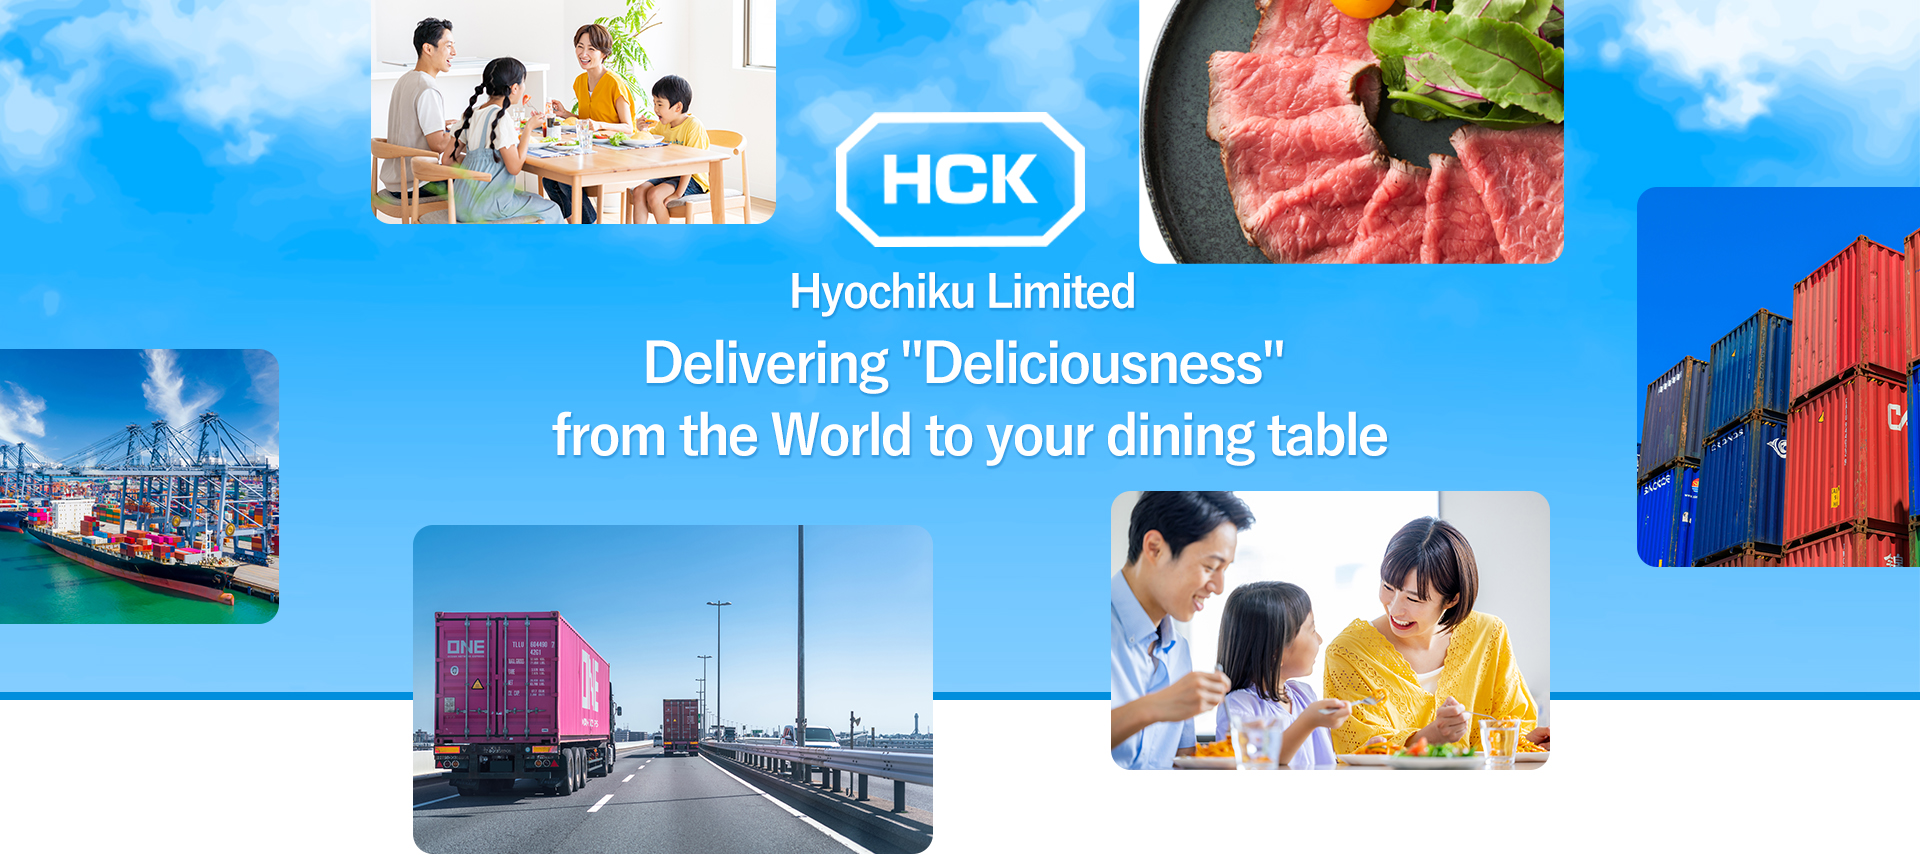 Hyochiku Limited